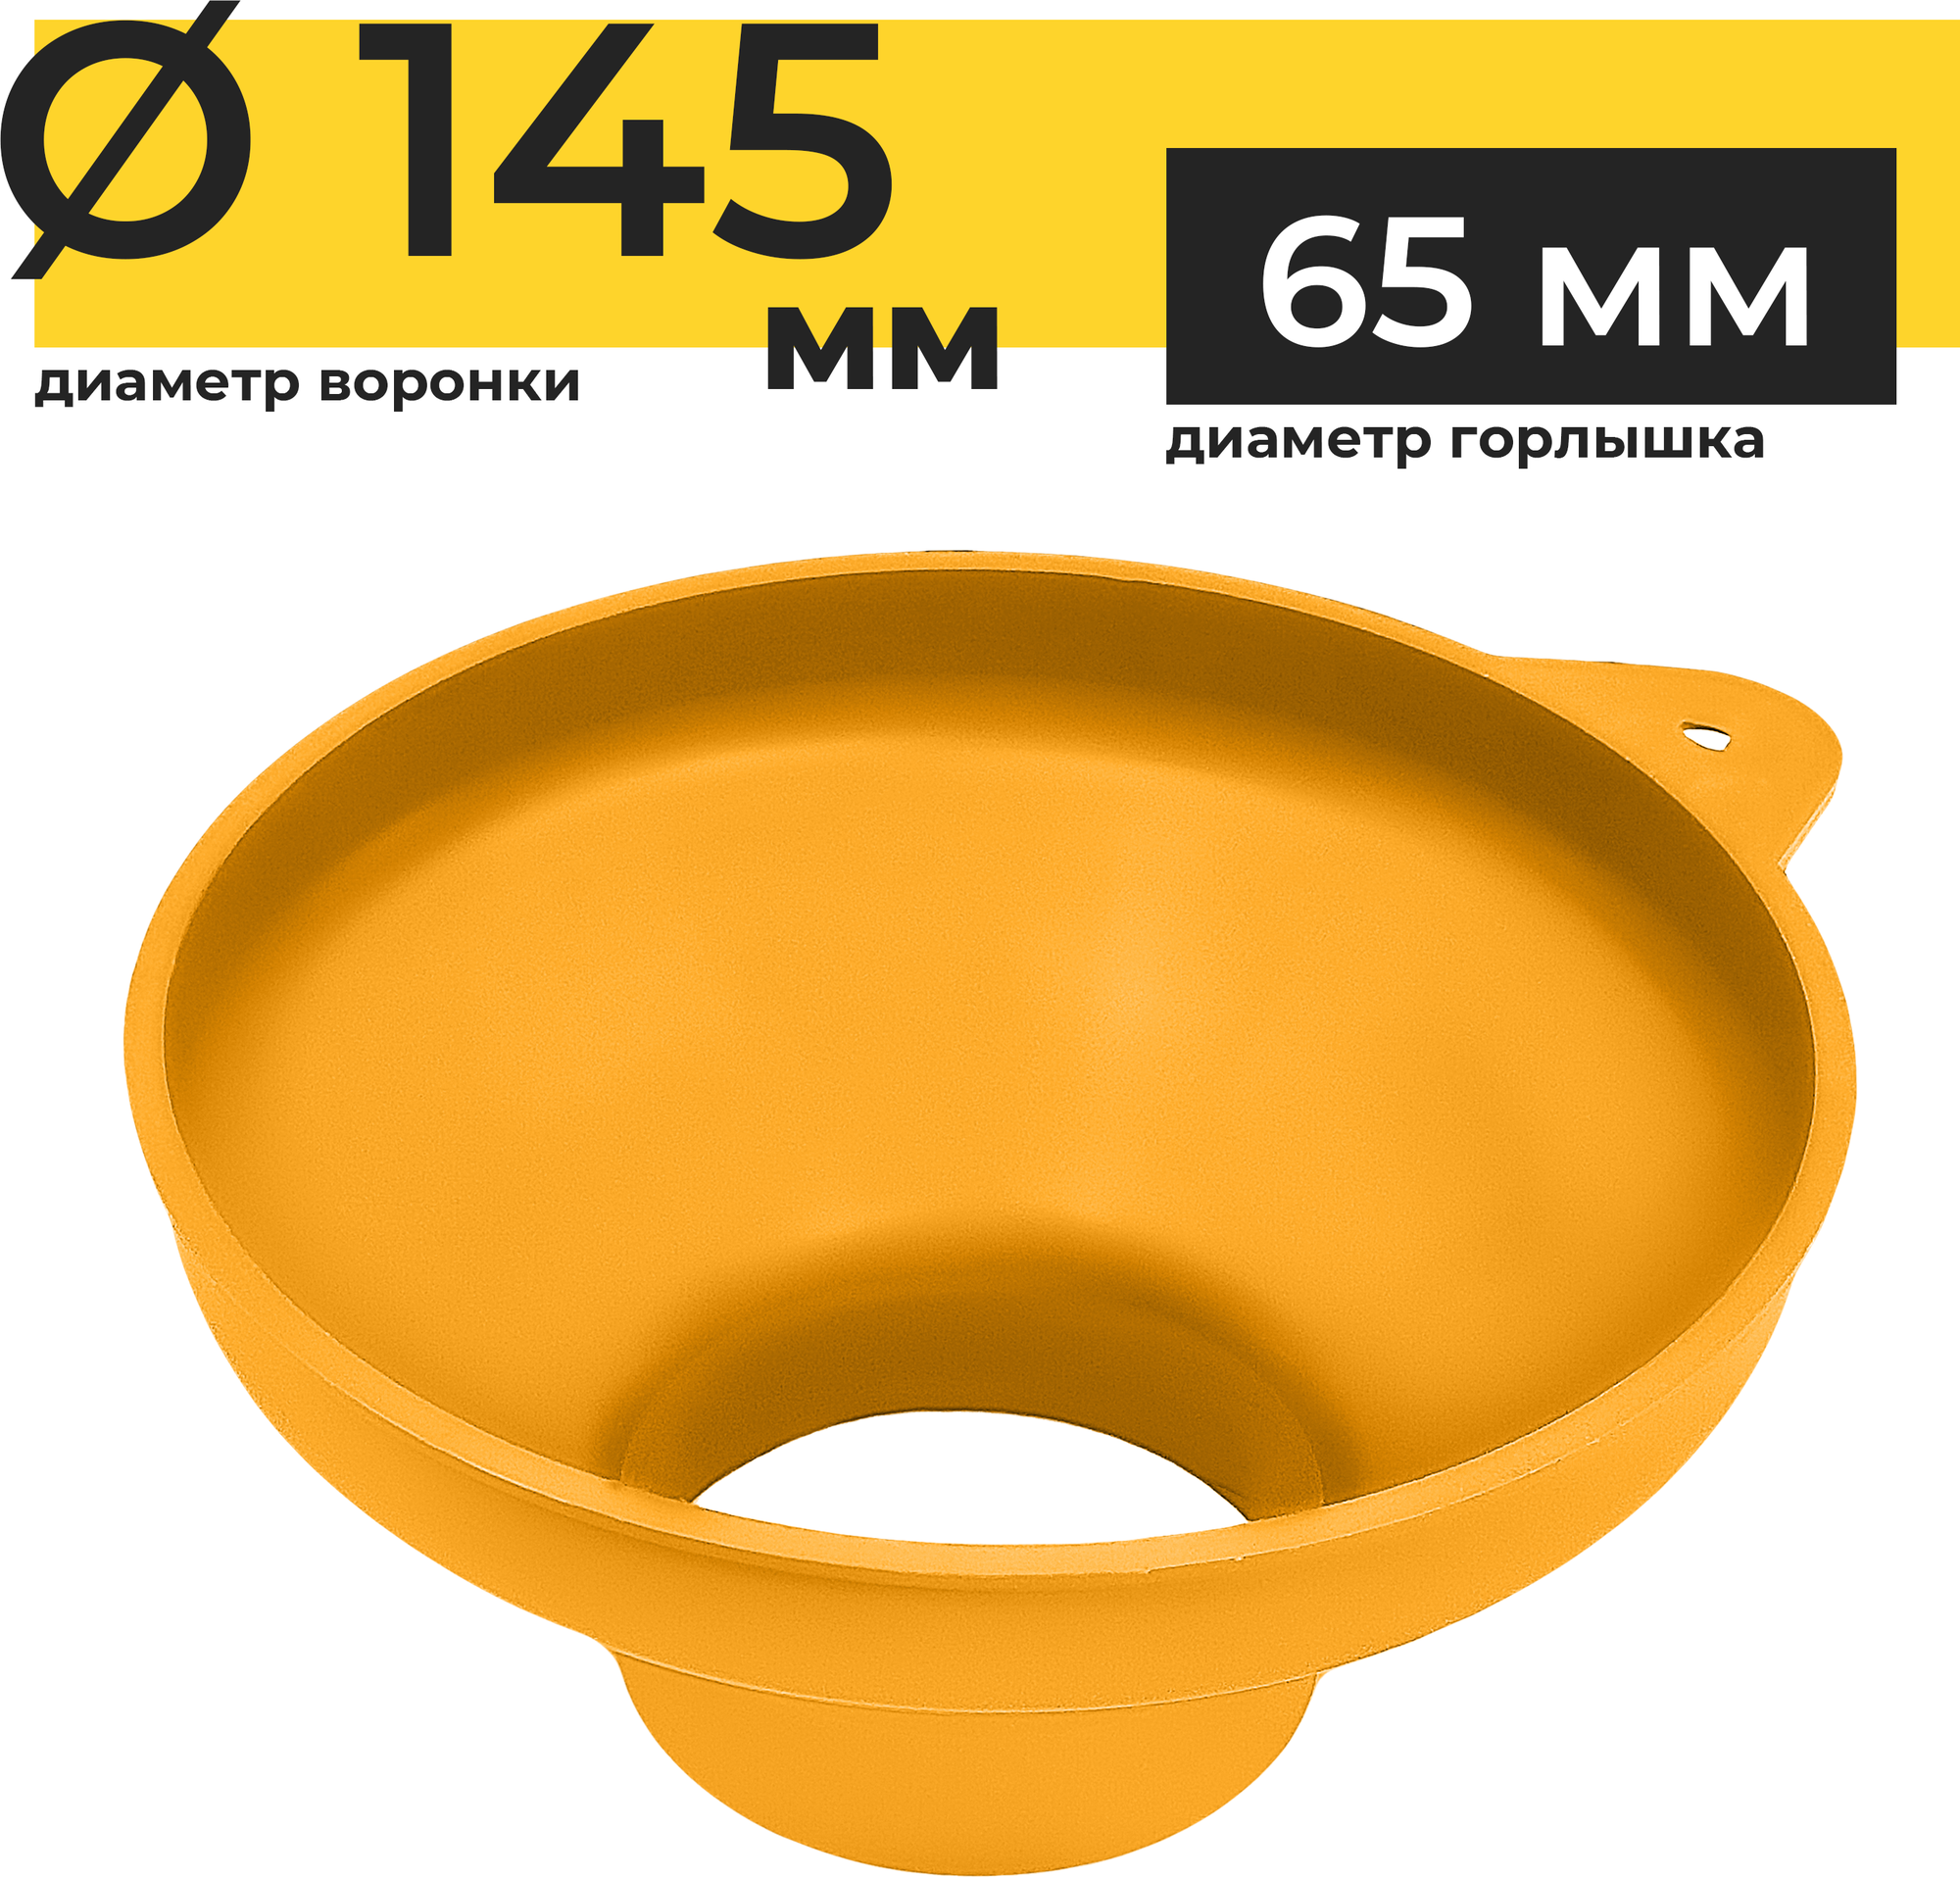 Воронка кухонная Yoma Home d145мм для банок, подходит для сухих, жидких или вязких продуктов, пластиковая оранжевая